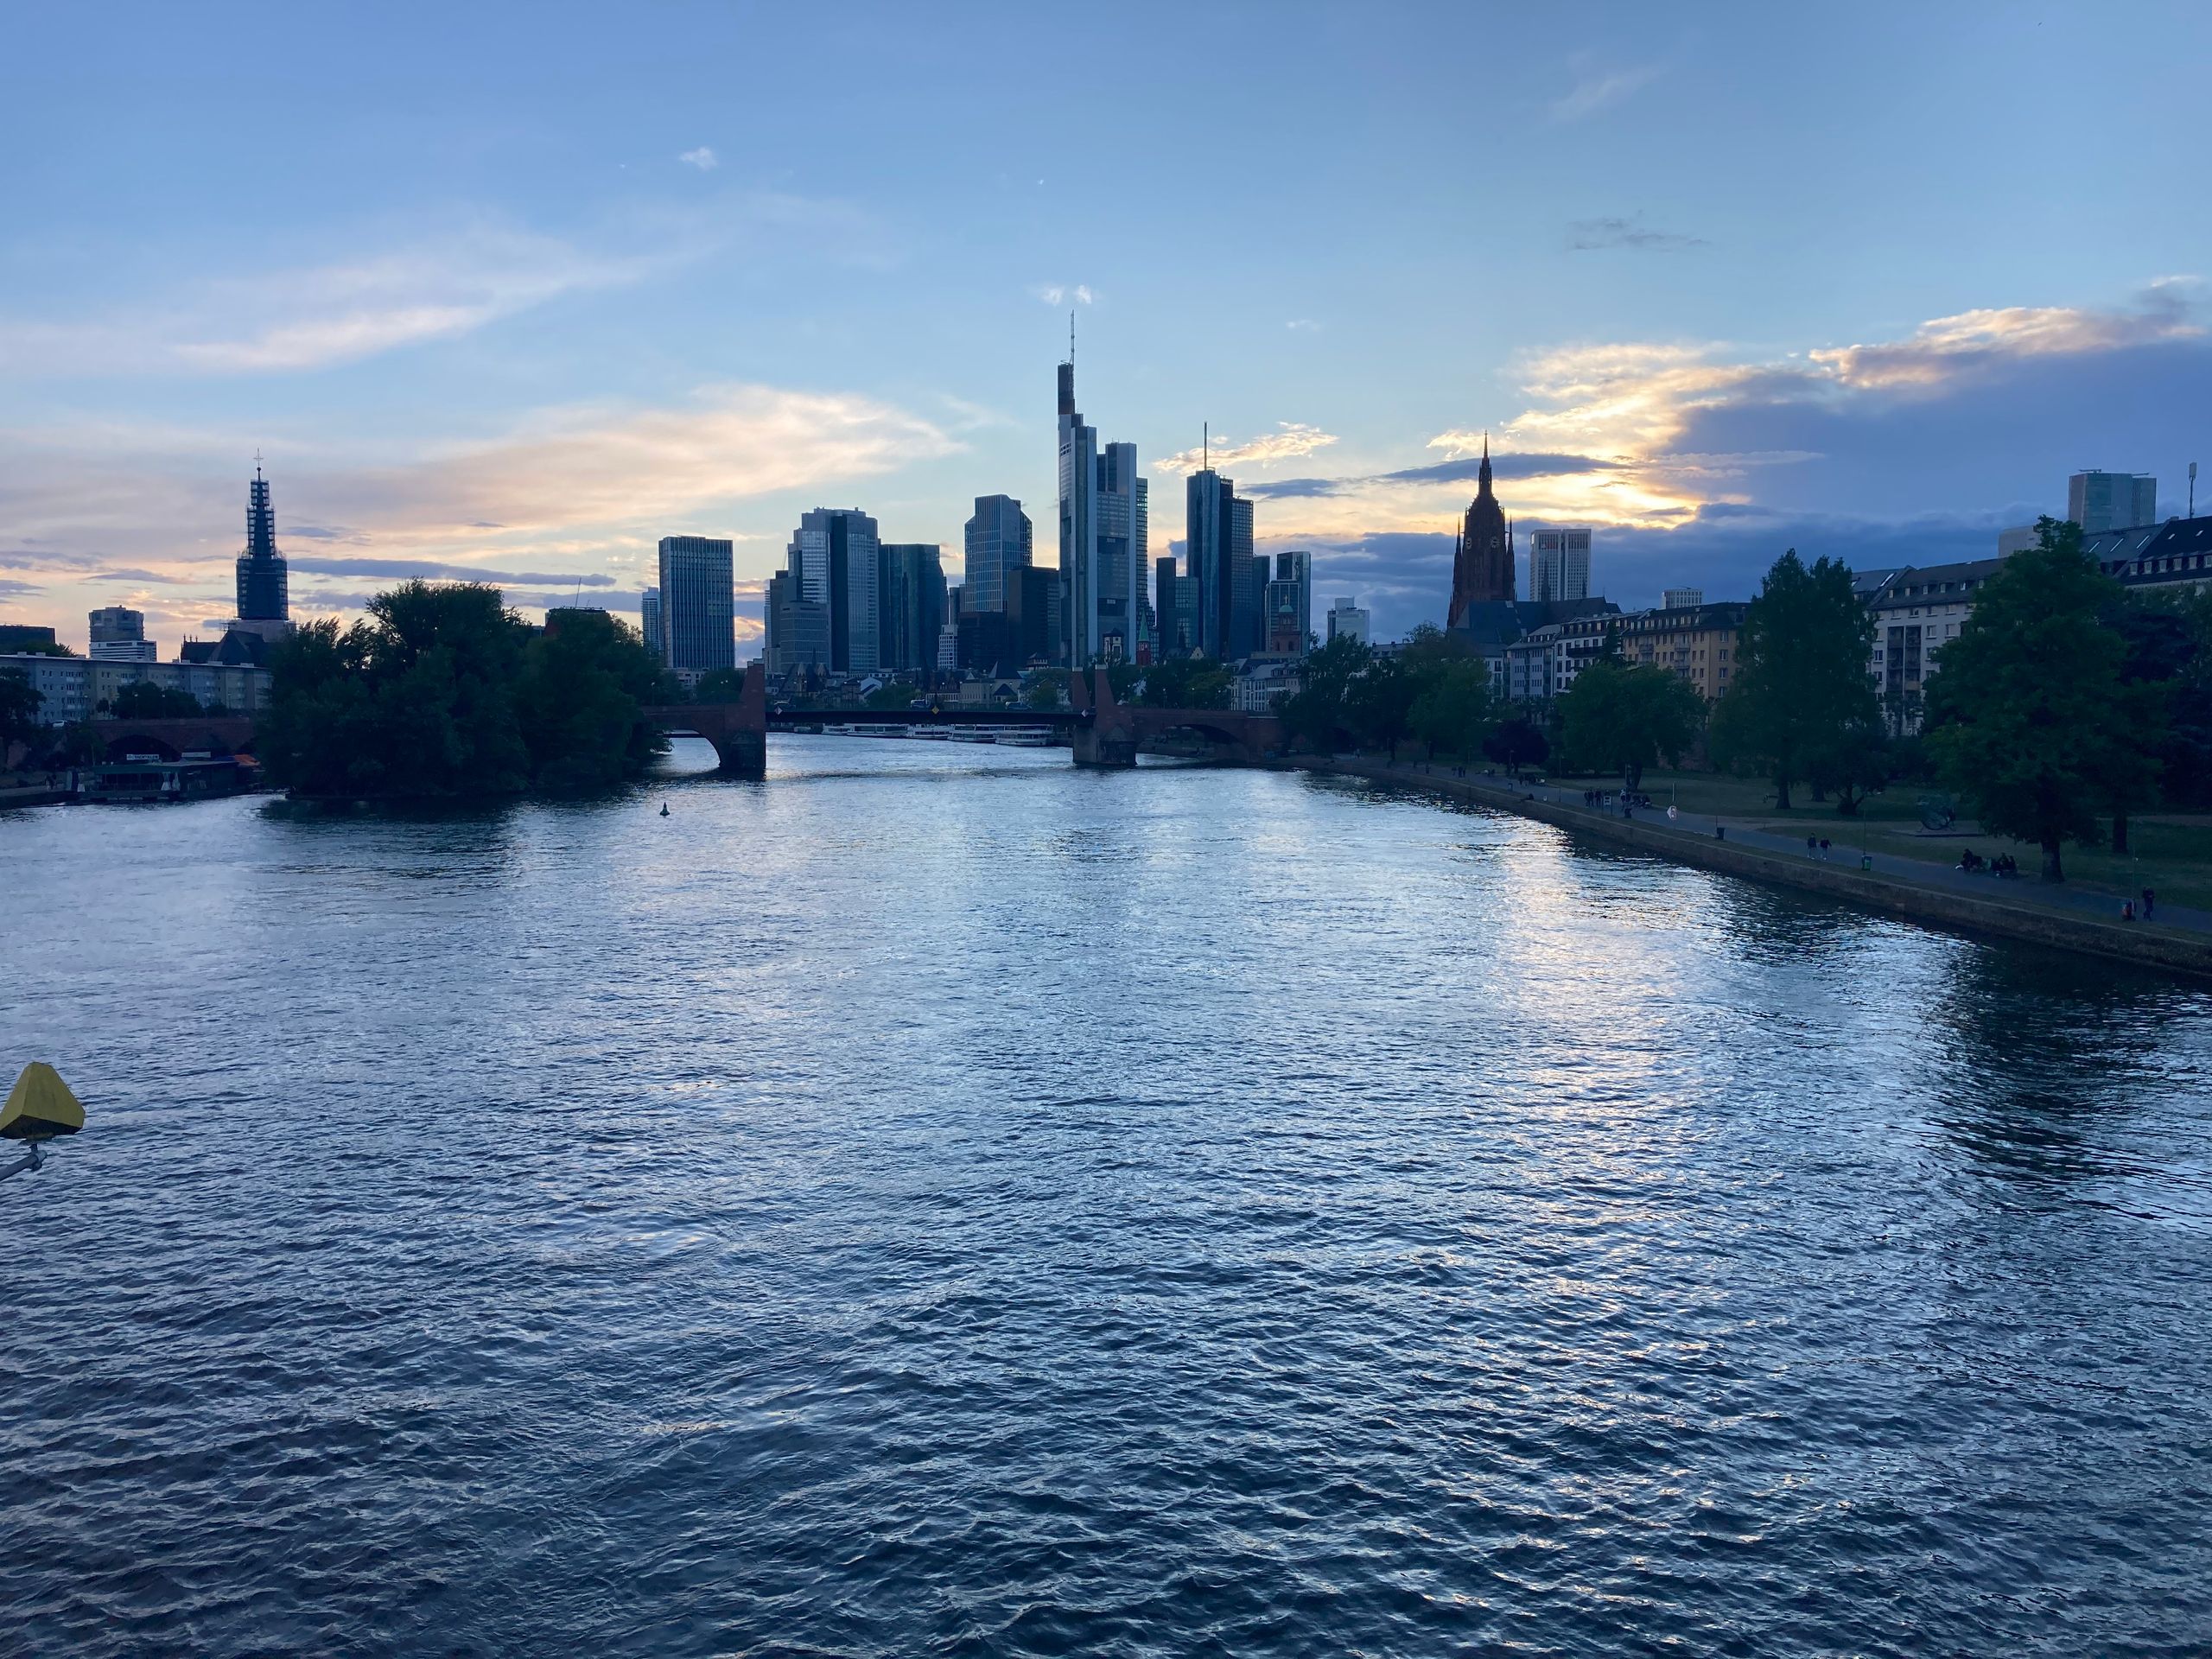 Frankfurt belohnt uns mit einem schönen Sonnenuntergang